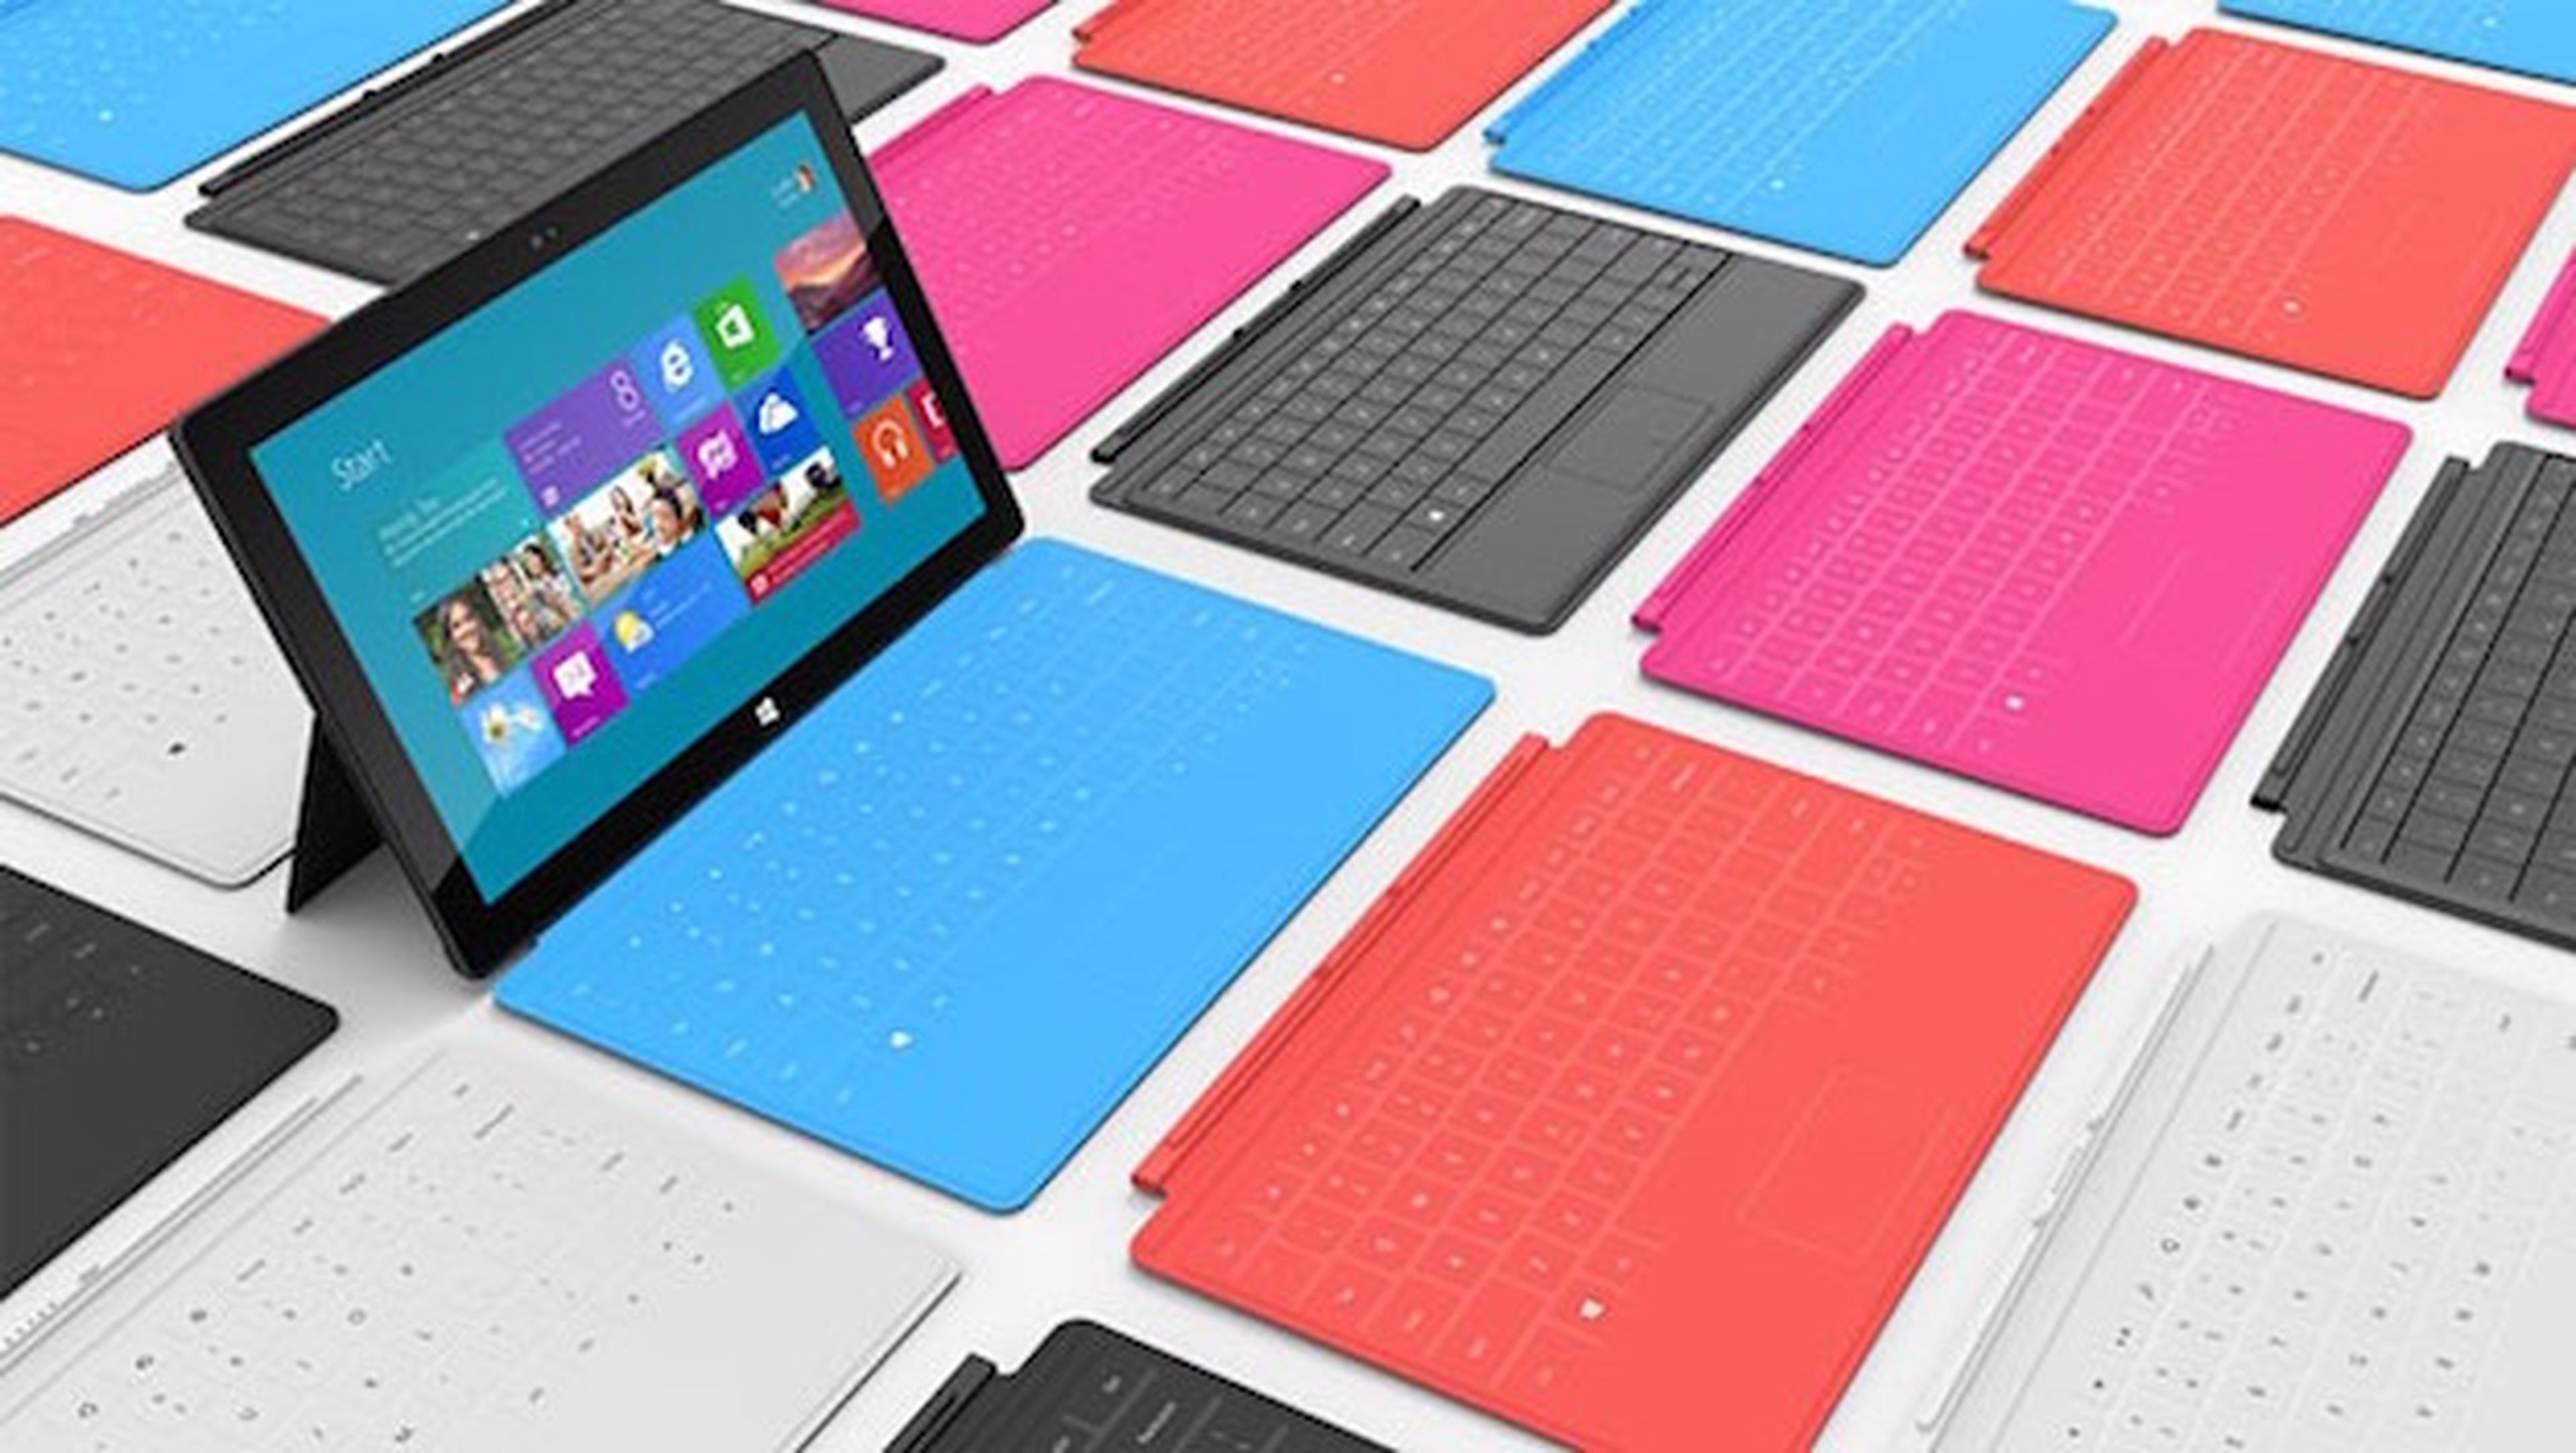 Microsoft podría lanzar en octubre una nueva Surface Pro 4